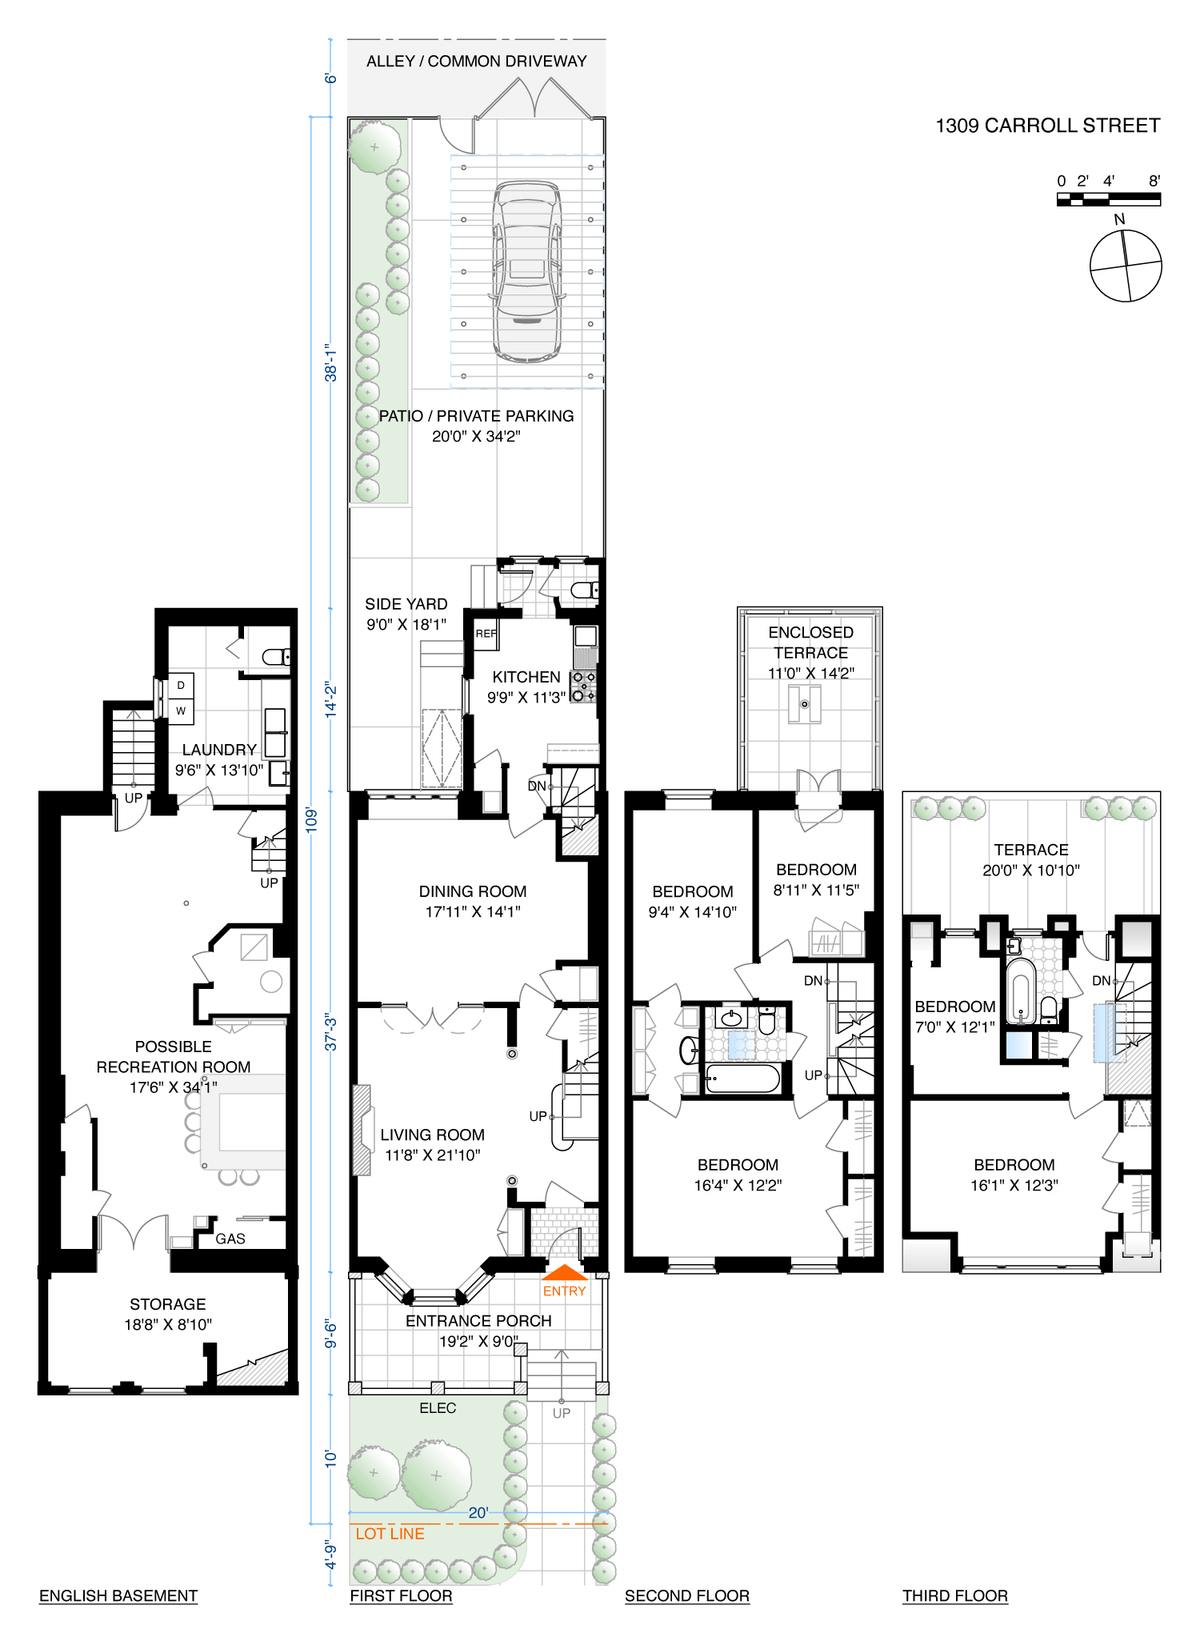 floor plan showing two floors of bedroom space with five bedrooms